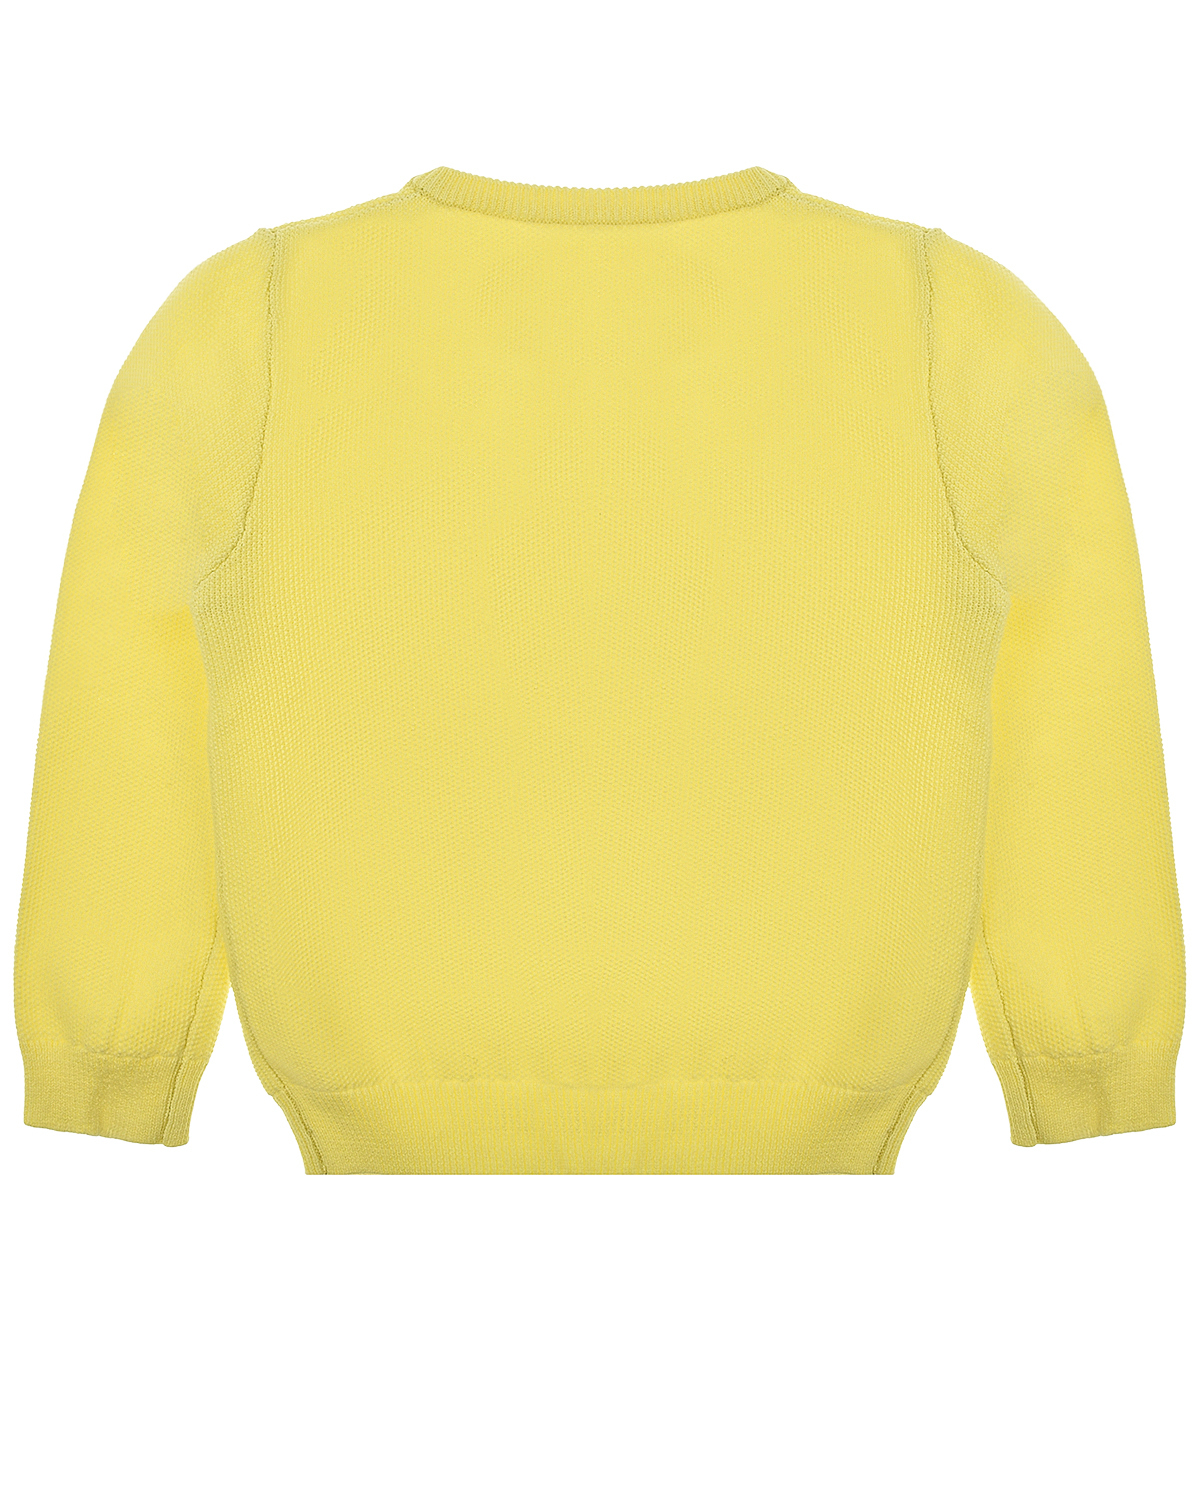 Кардиган Ginny Pale Lemon Molo детский, размер 68, цвет желтый - фото 2